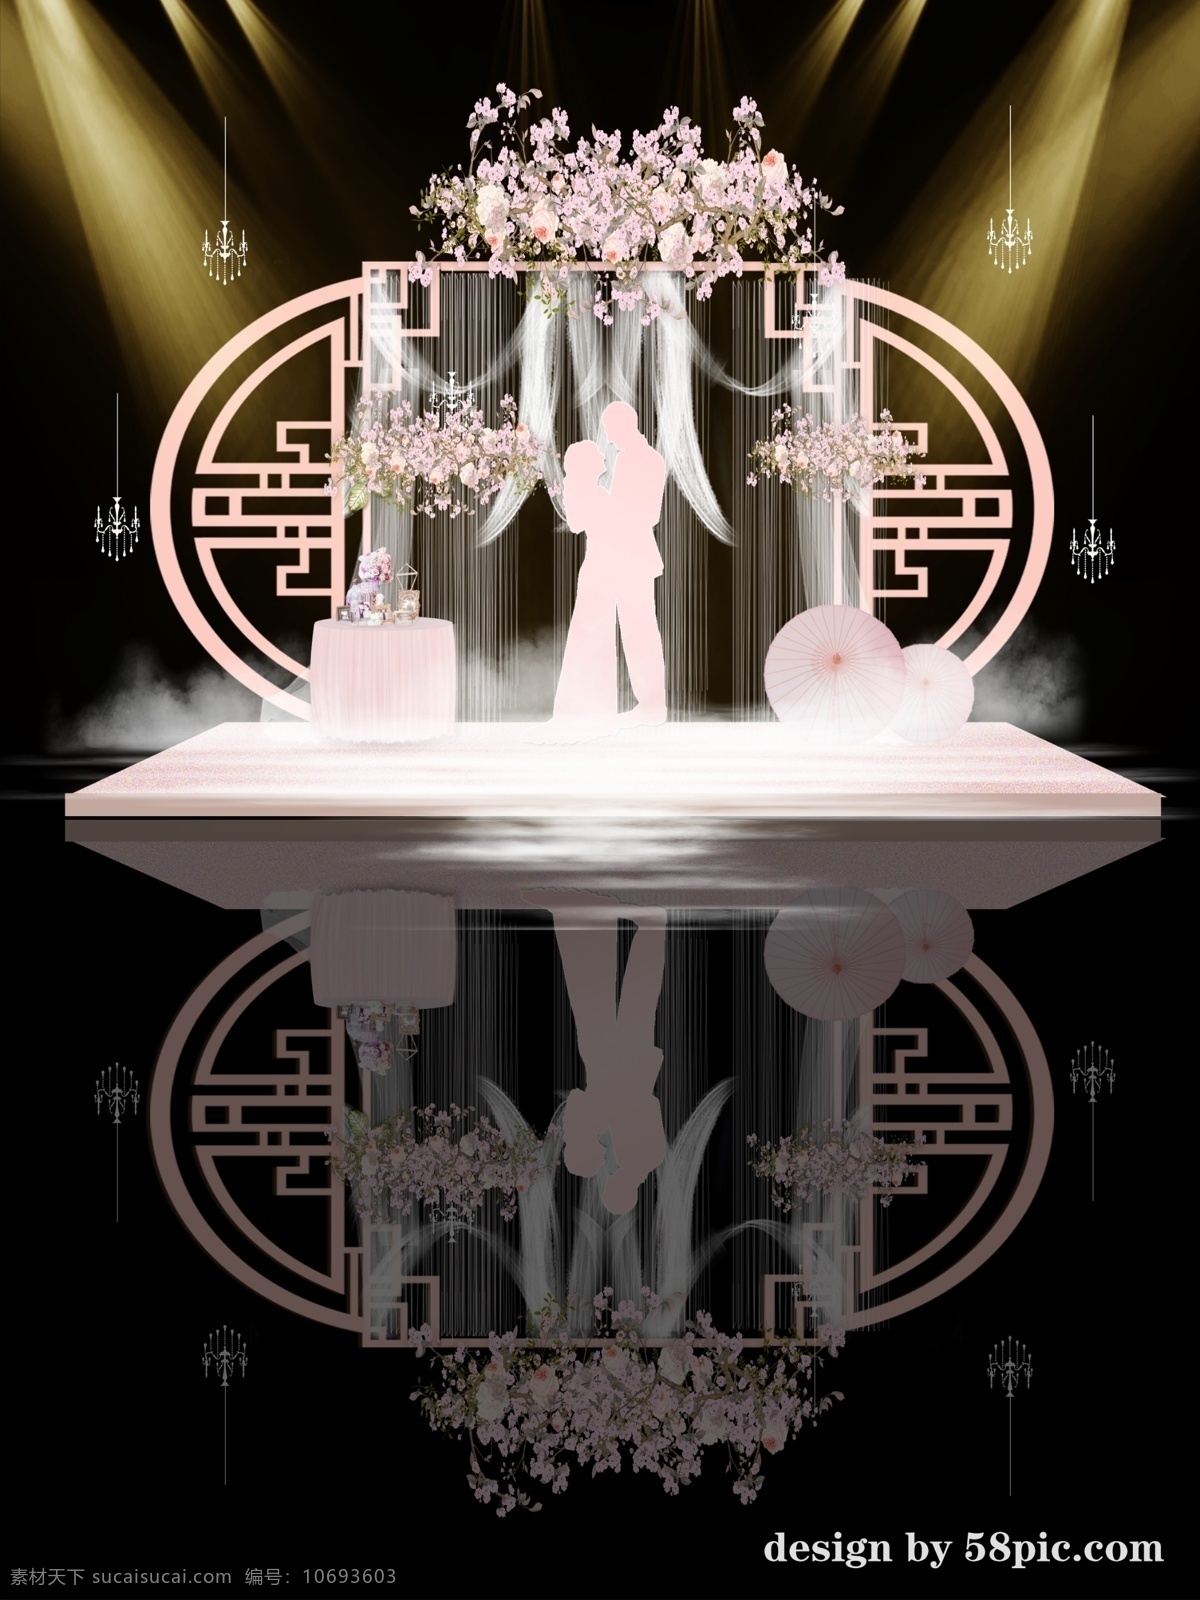 粉色 中式 元素 现代 婚礼 效果图 kt版 背景 大型 婚庆 喷绘 源文件